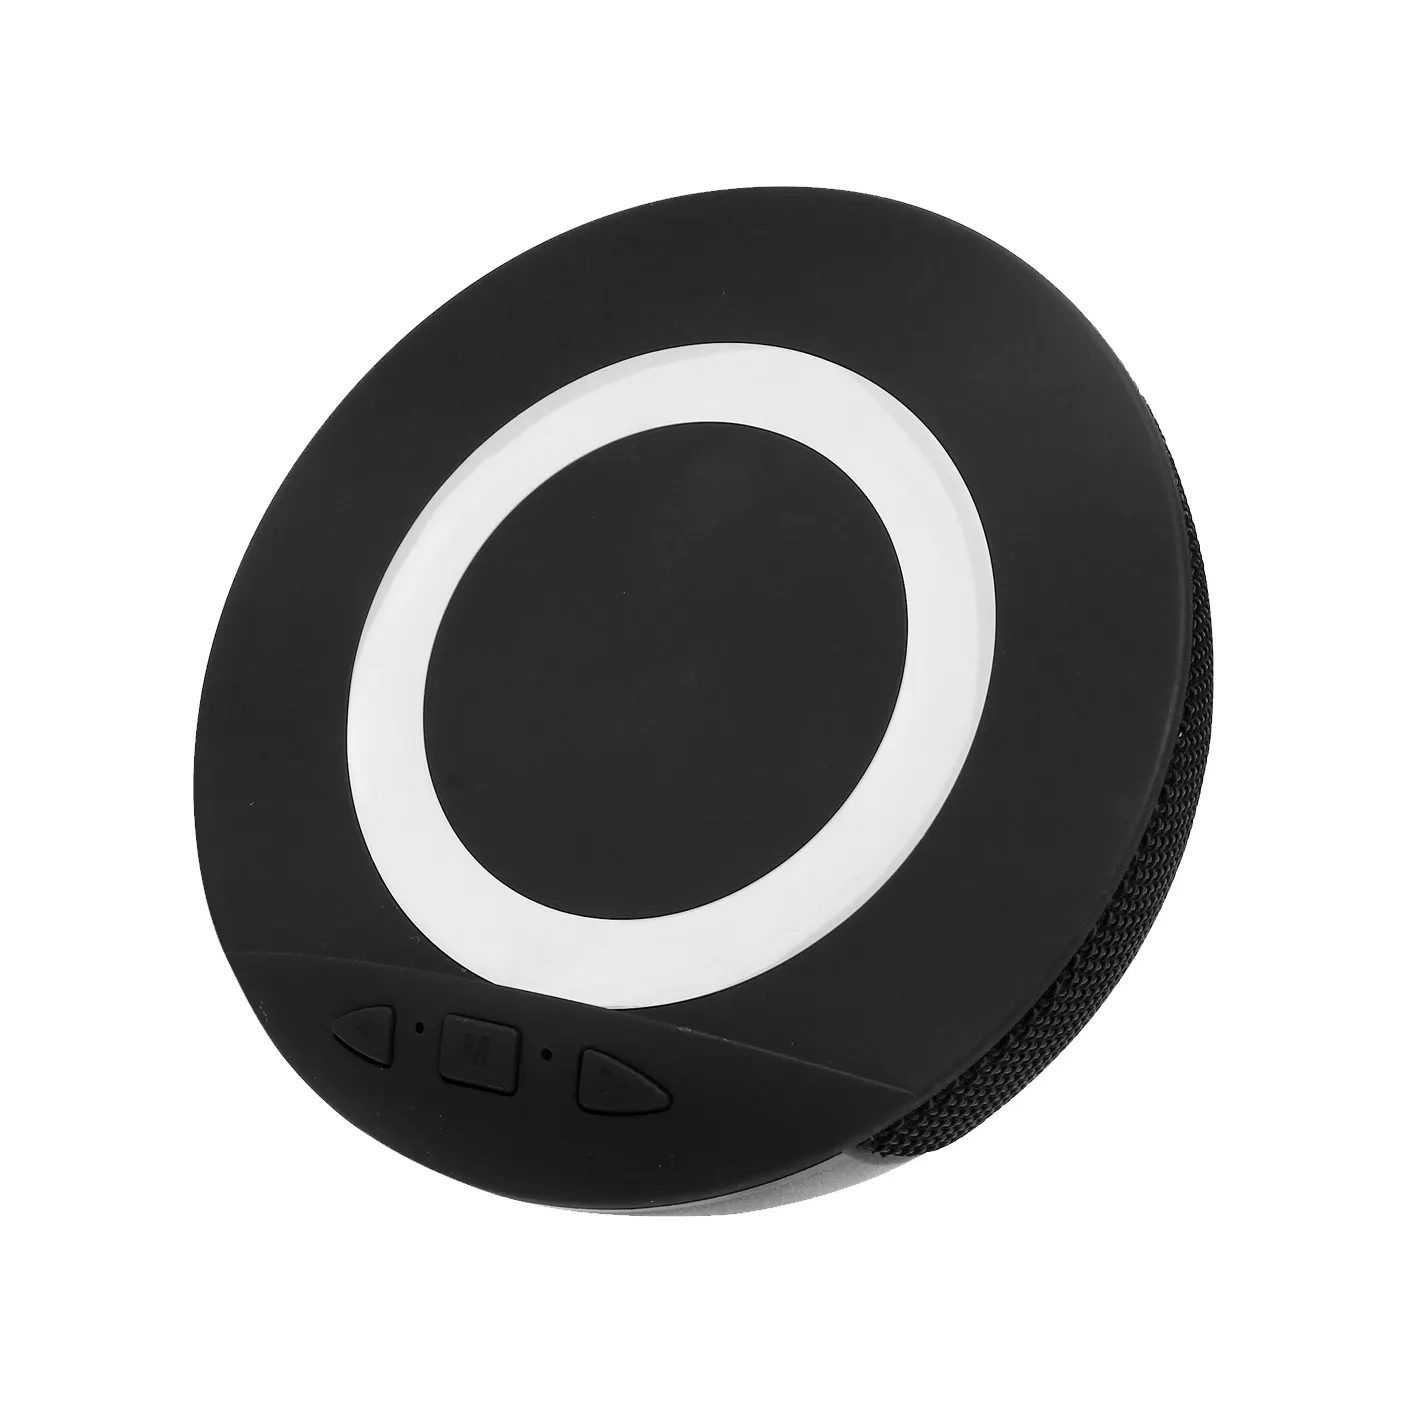 CD Sound altoparlante Bluetooth portatile impermeabile per esterni Mini Chip stabile esterno